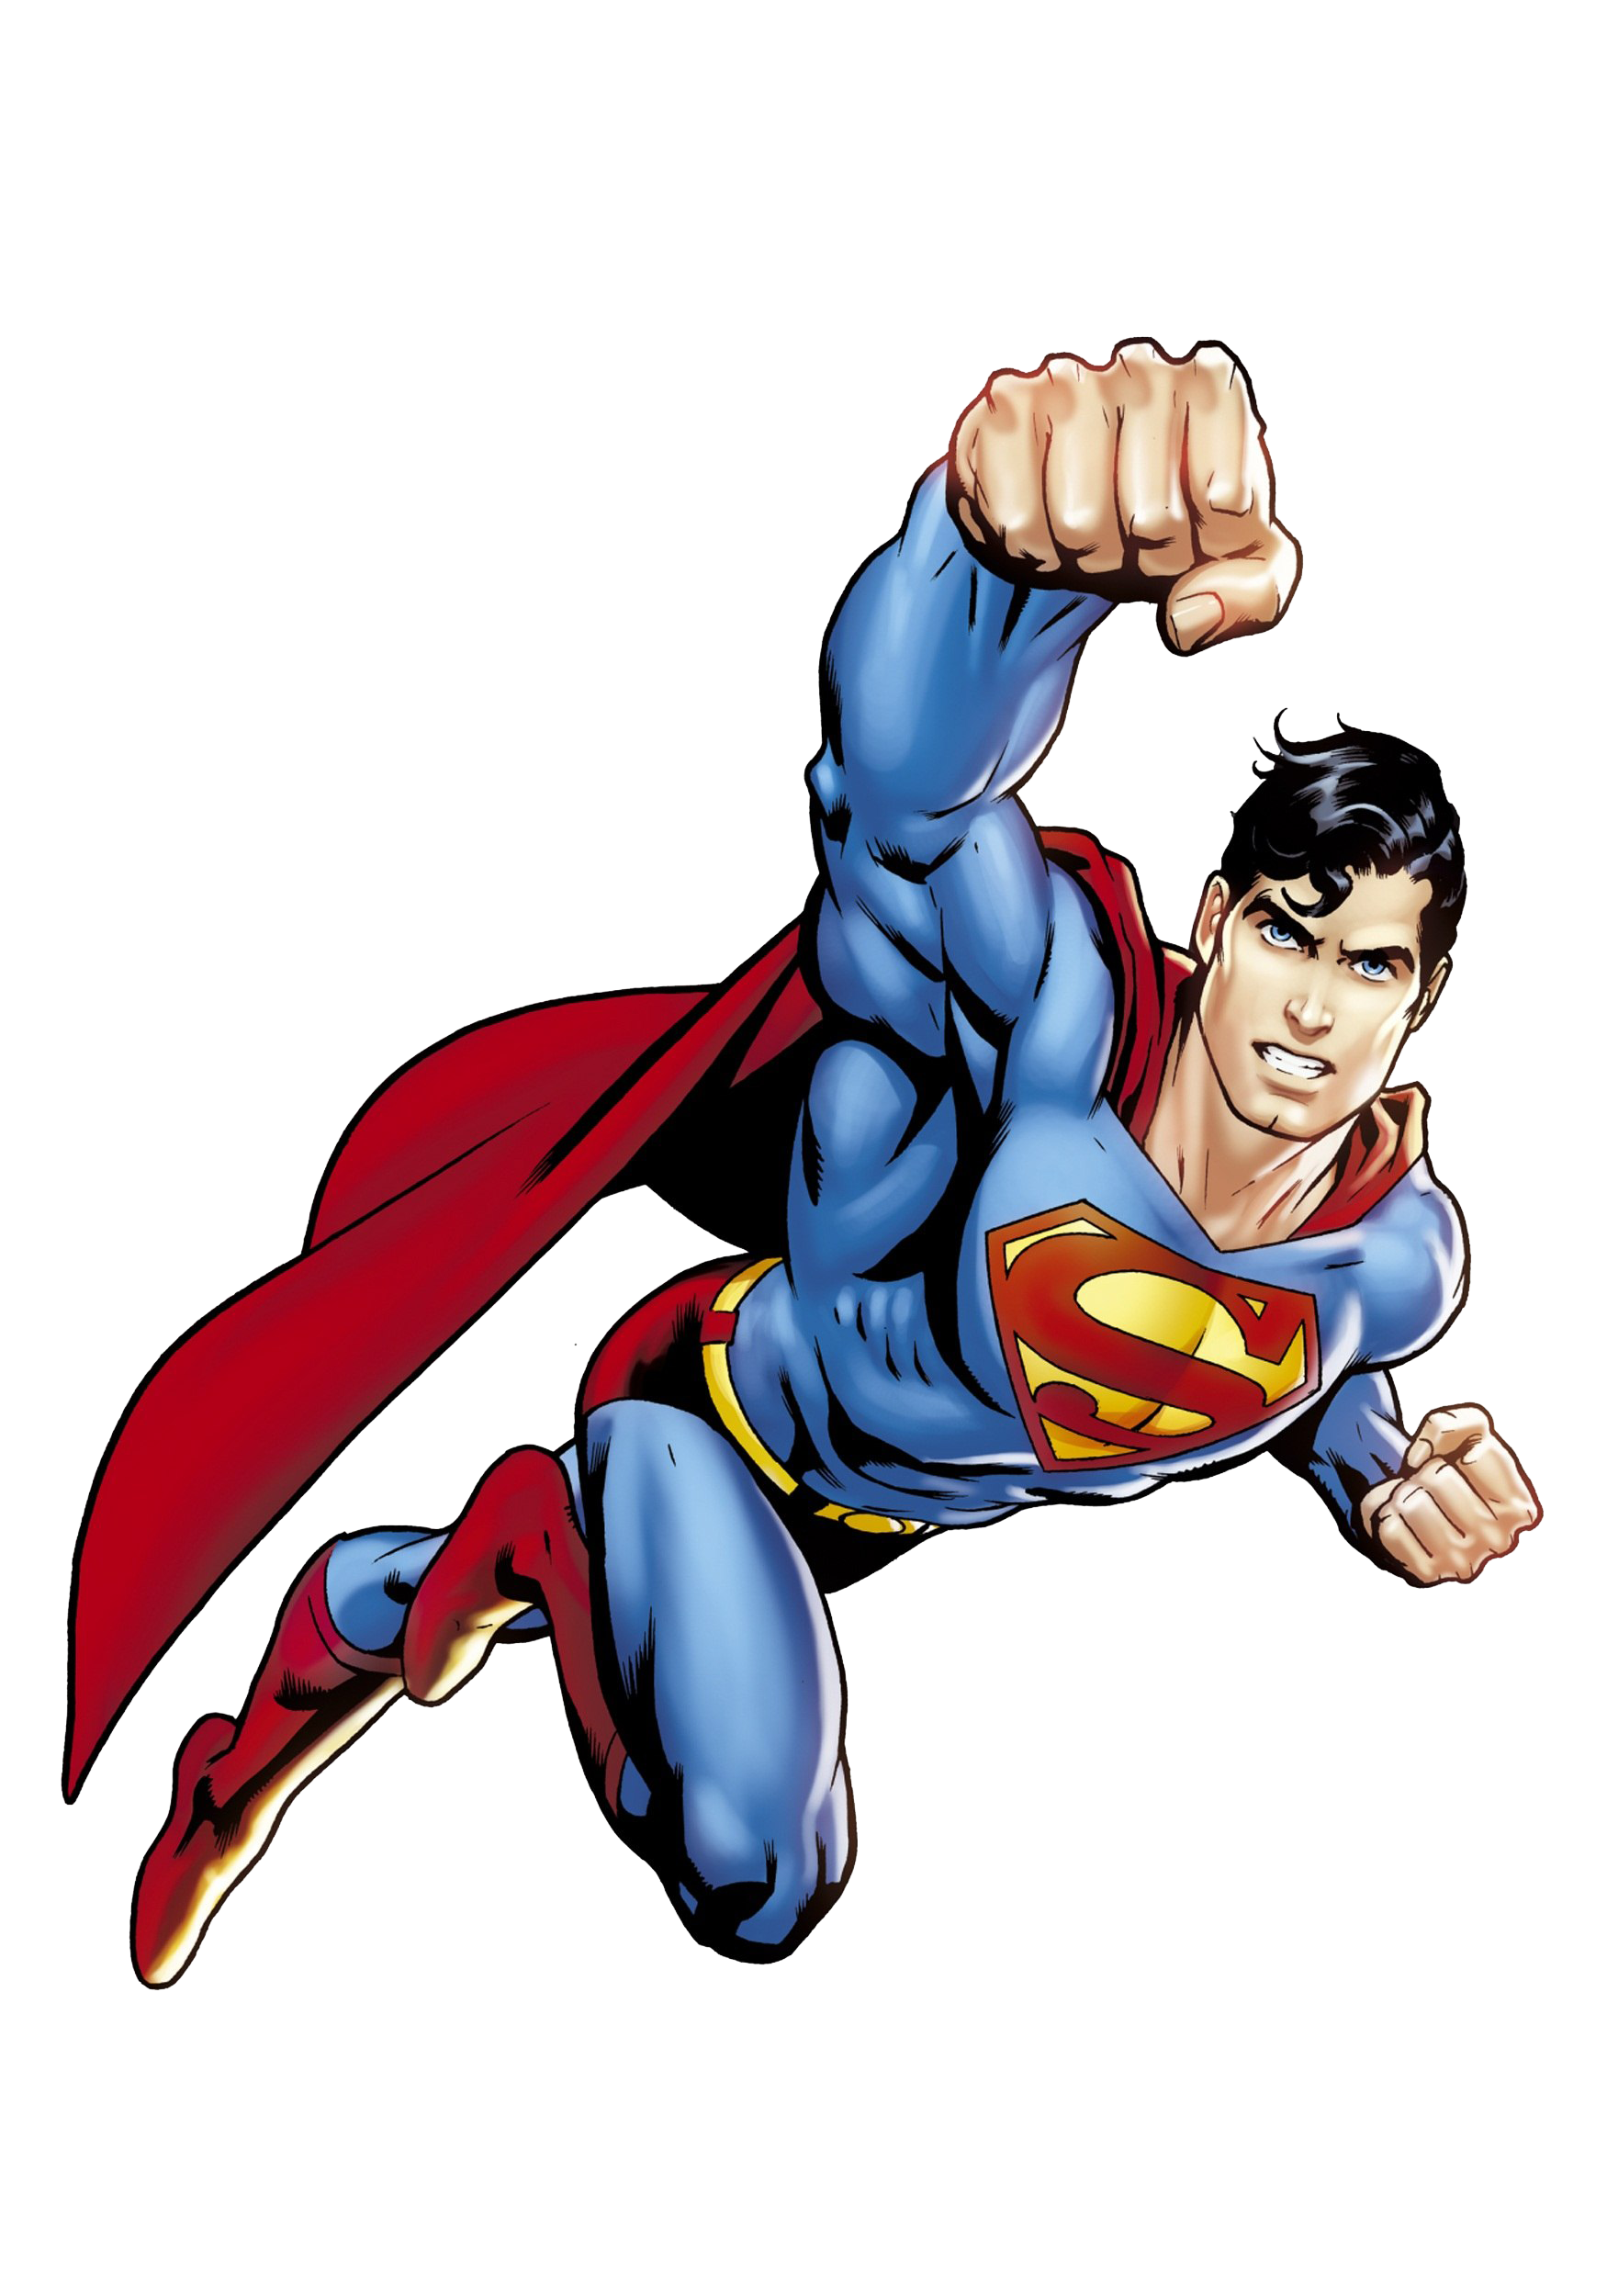 Superman volando imagen PNG fondo Transparente